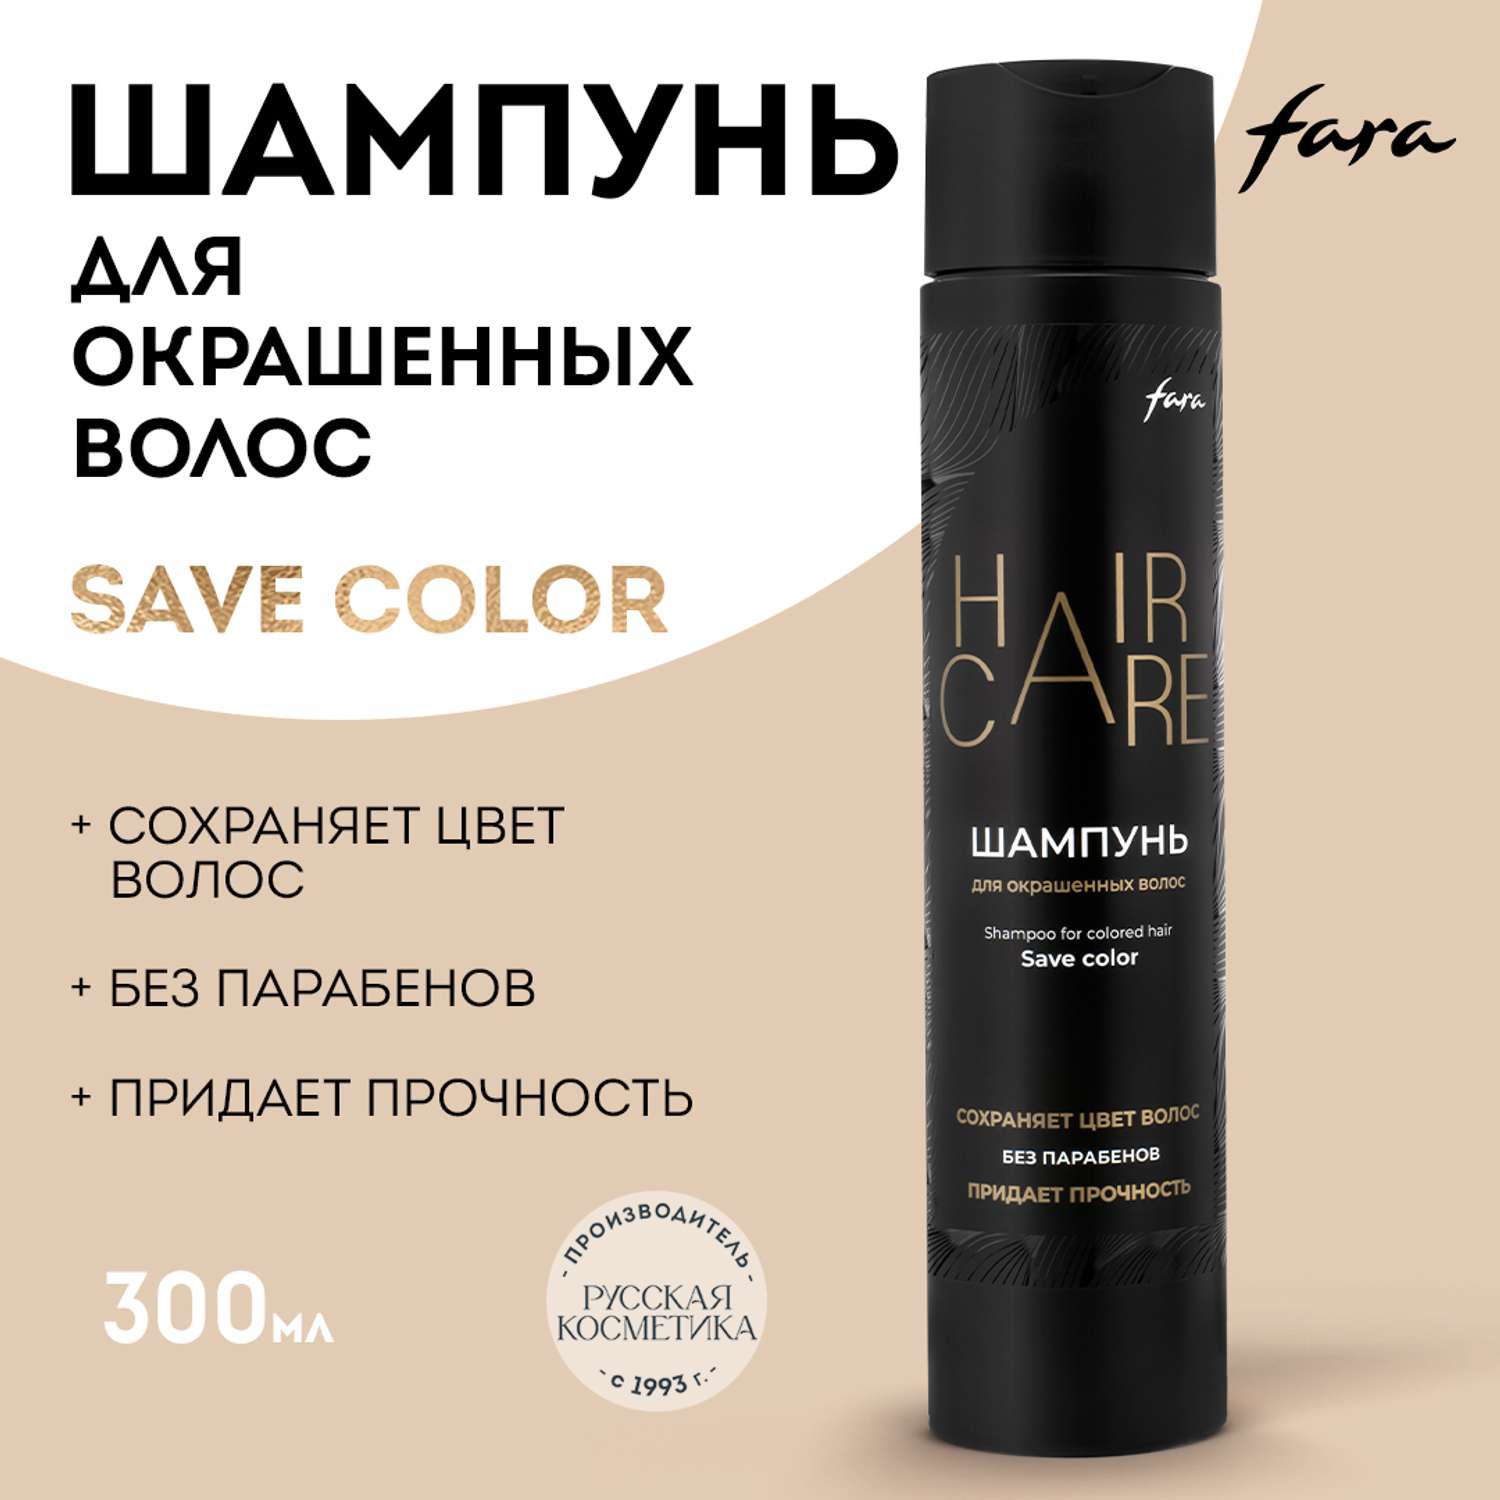 Шампунь FARA для окрашенных волос Save Color 300 мл - фото 1